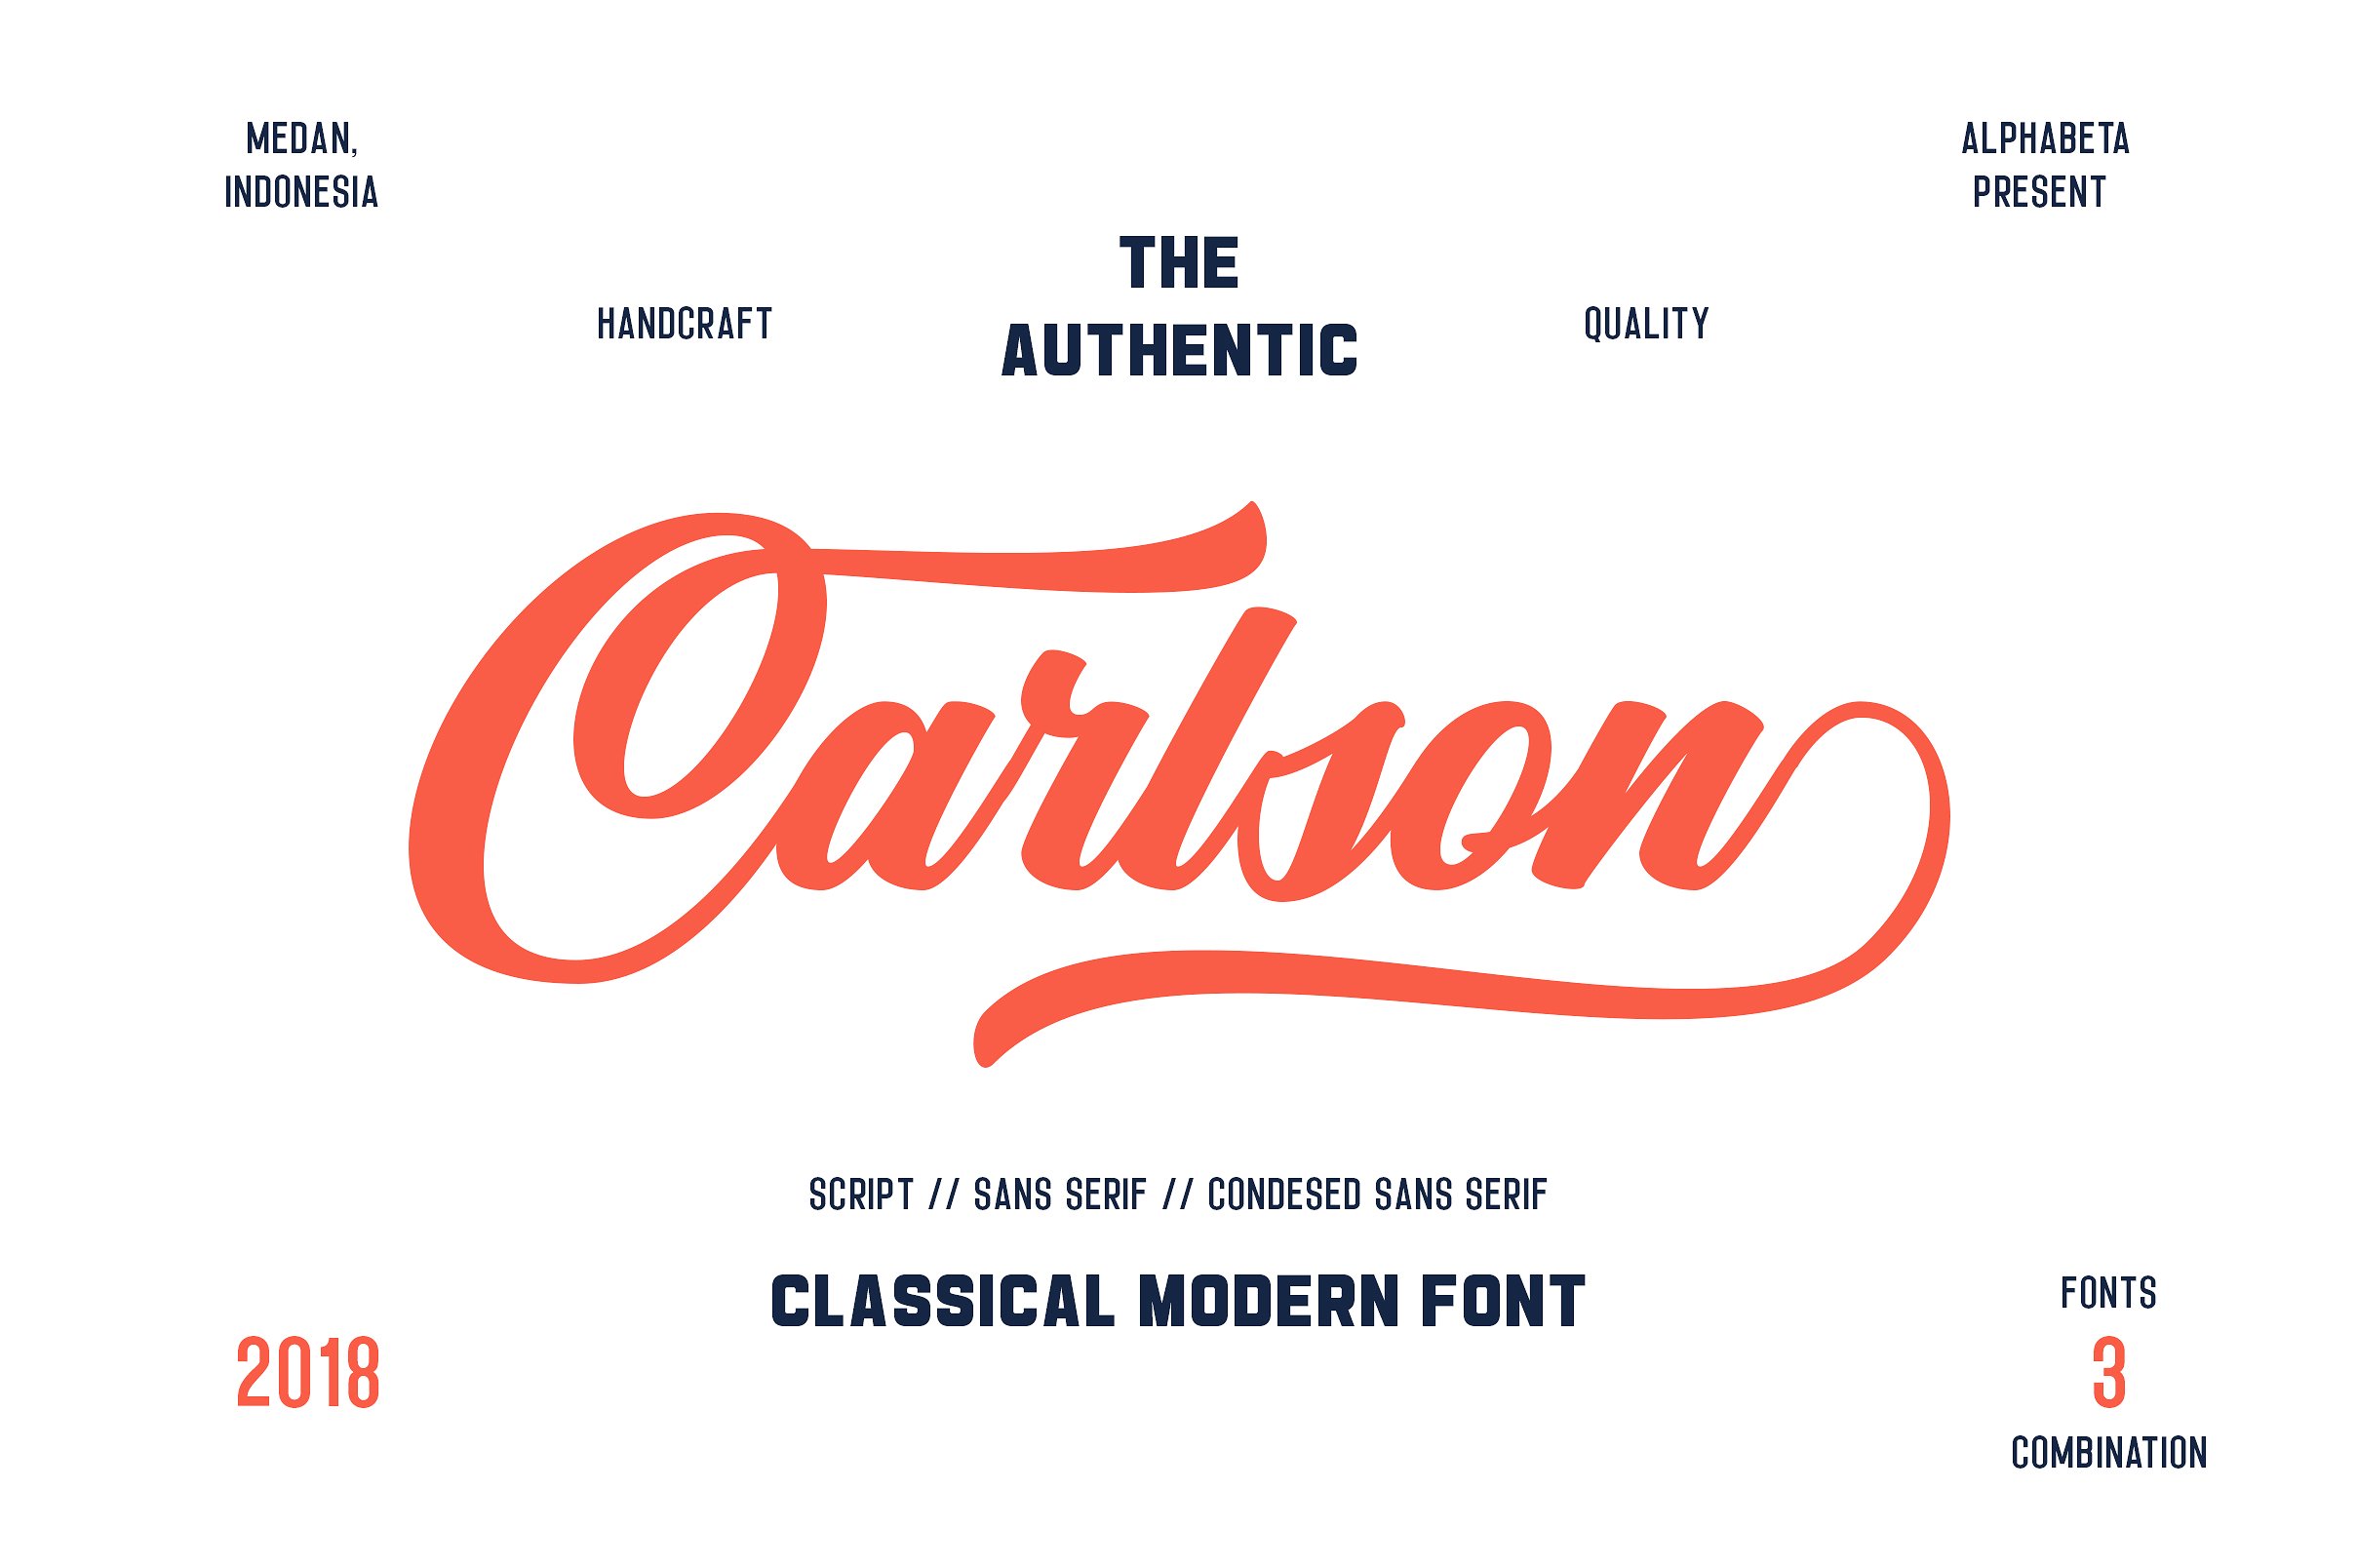 脚本无衬线字体Carlson | 3 Font Combin